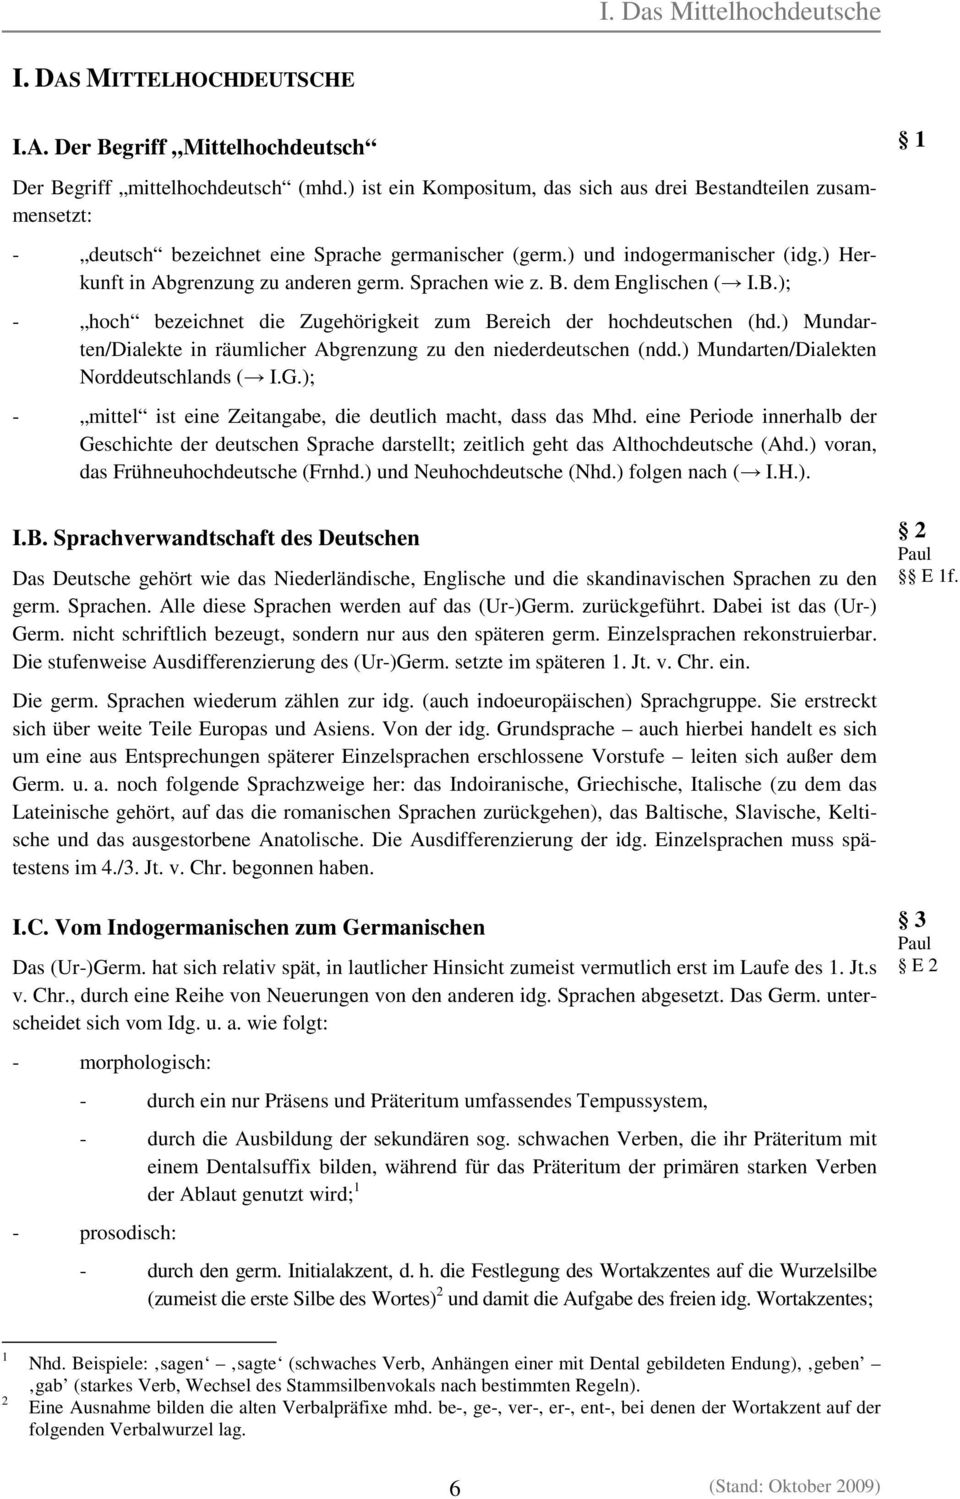 Sprachen wie z. B. dem Englischen ( I.B.); - hoch bezeichnet die Zugehörigkeit zum Bereich der hochdeutschen (hd.) Mundarten/Dialekte in räumlicher Abgrenzung zu den niederdeutschen (ndd.